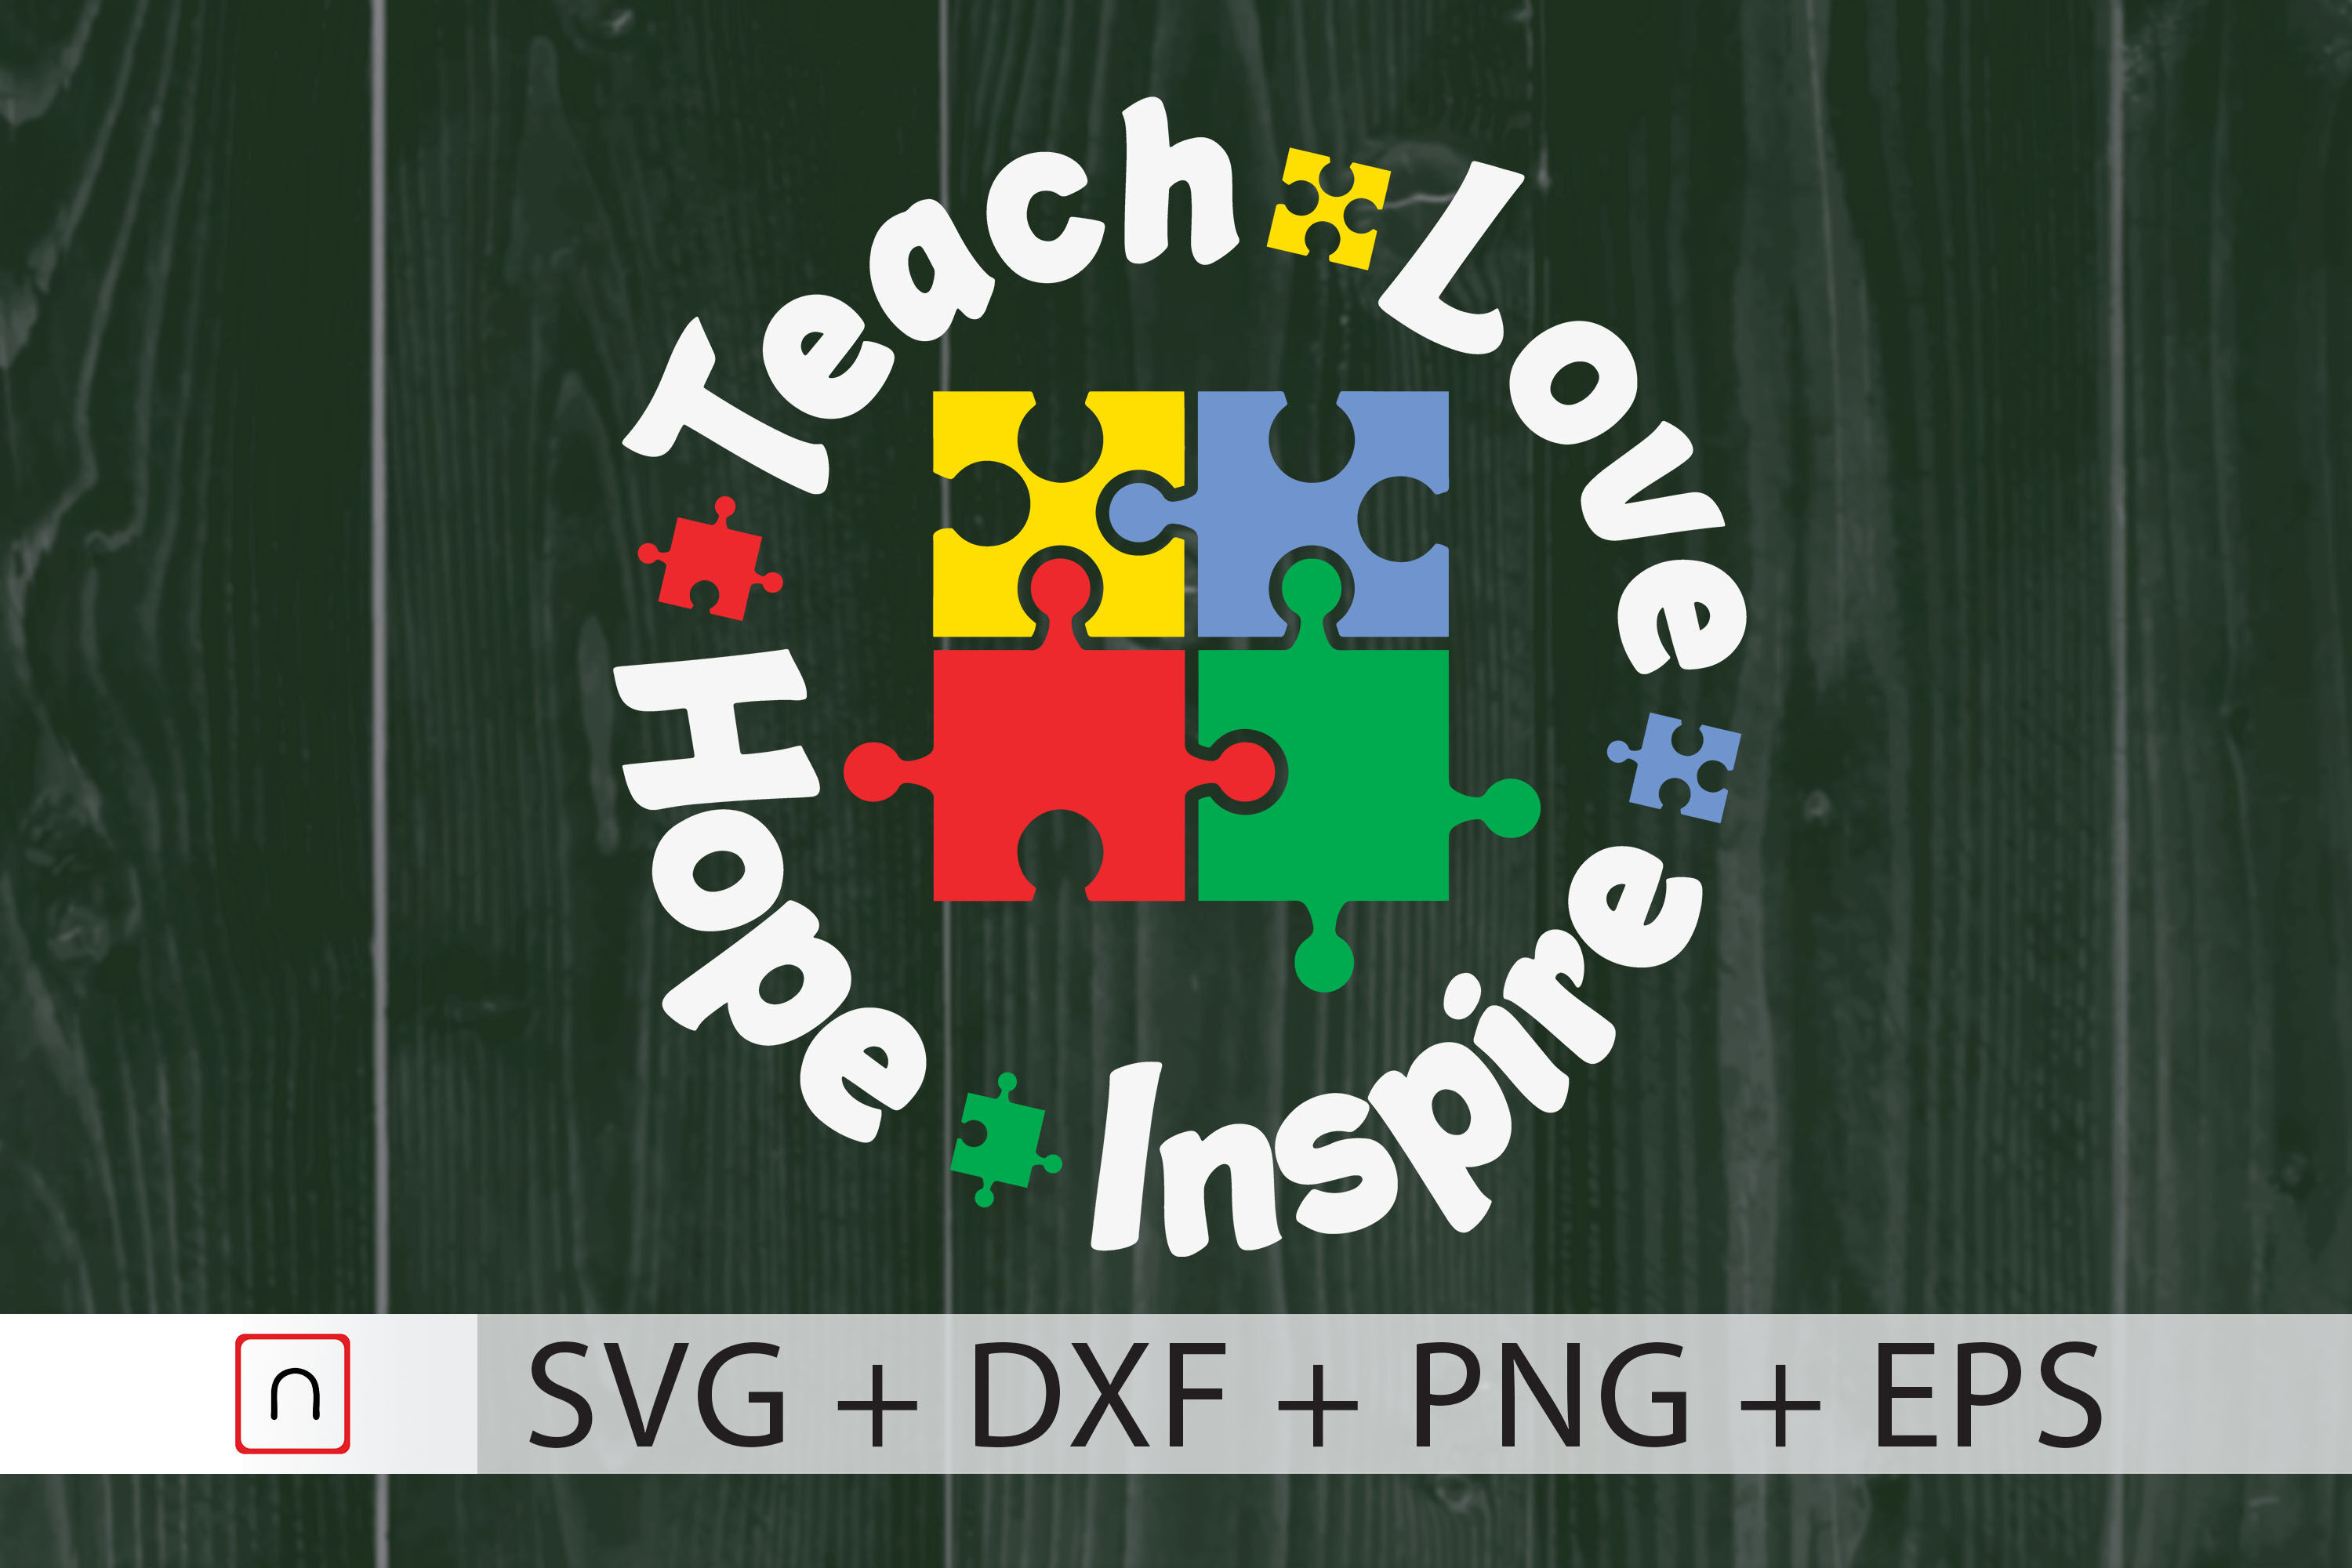 Teach Love Hope Inspire Svg Teacher Svg By Novalia Thehungryjpeg Com